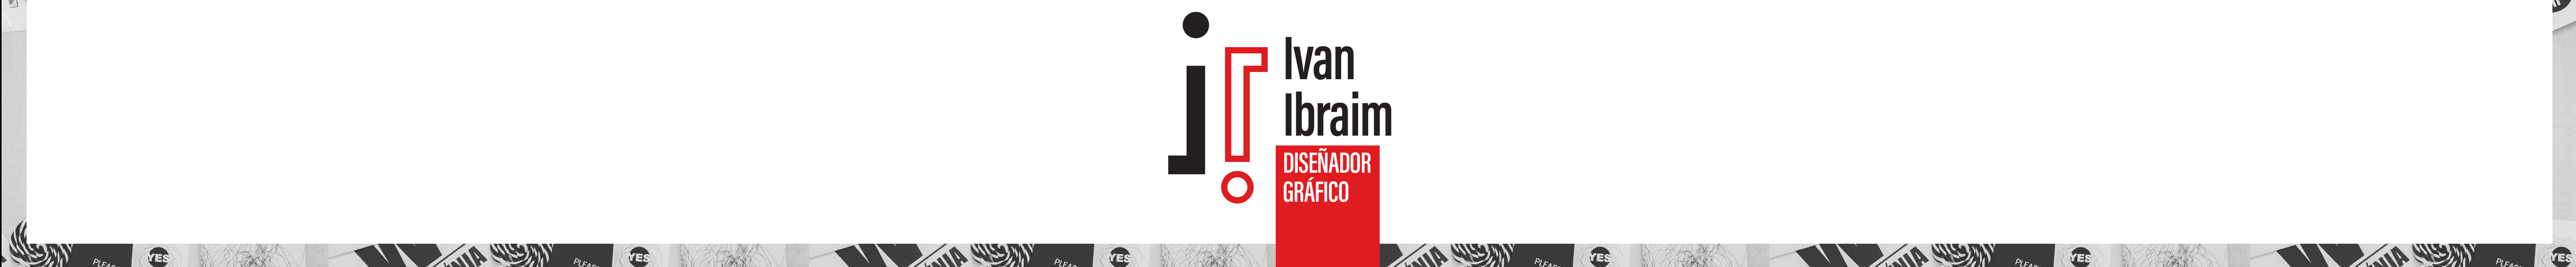 Ivan Ibraim Martínez Núñez's profile banner